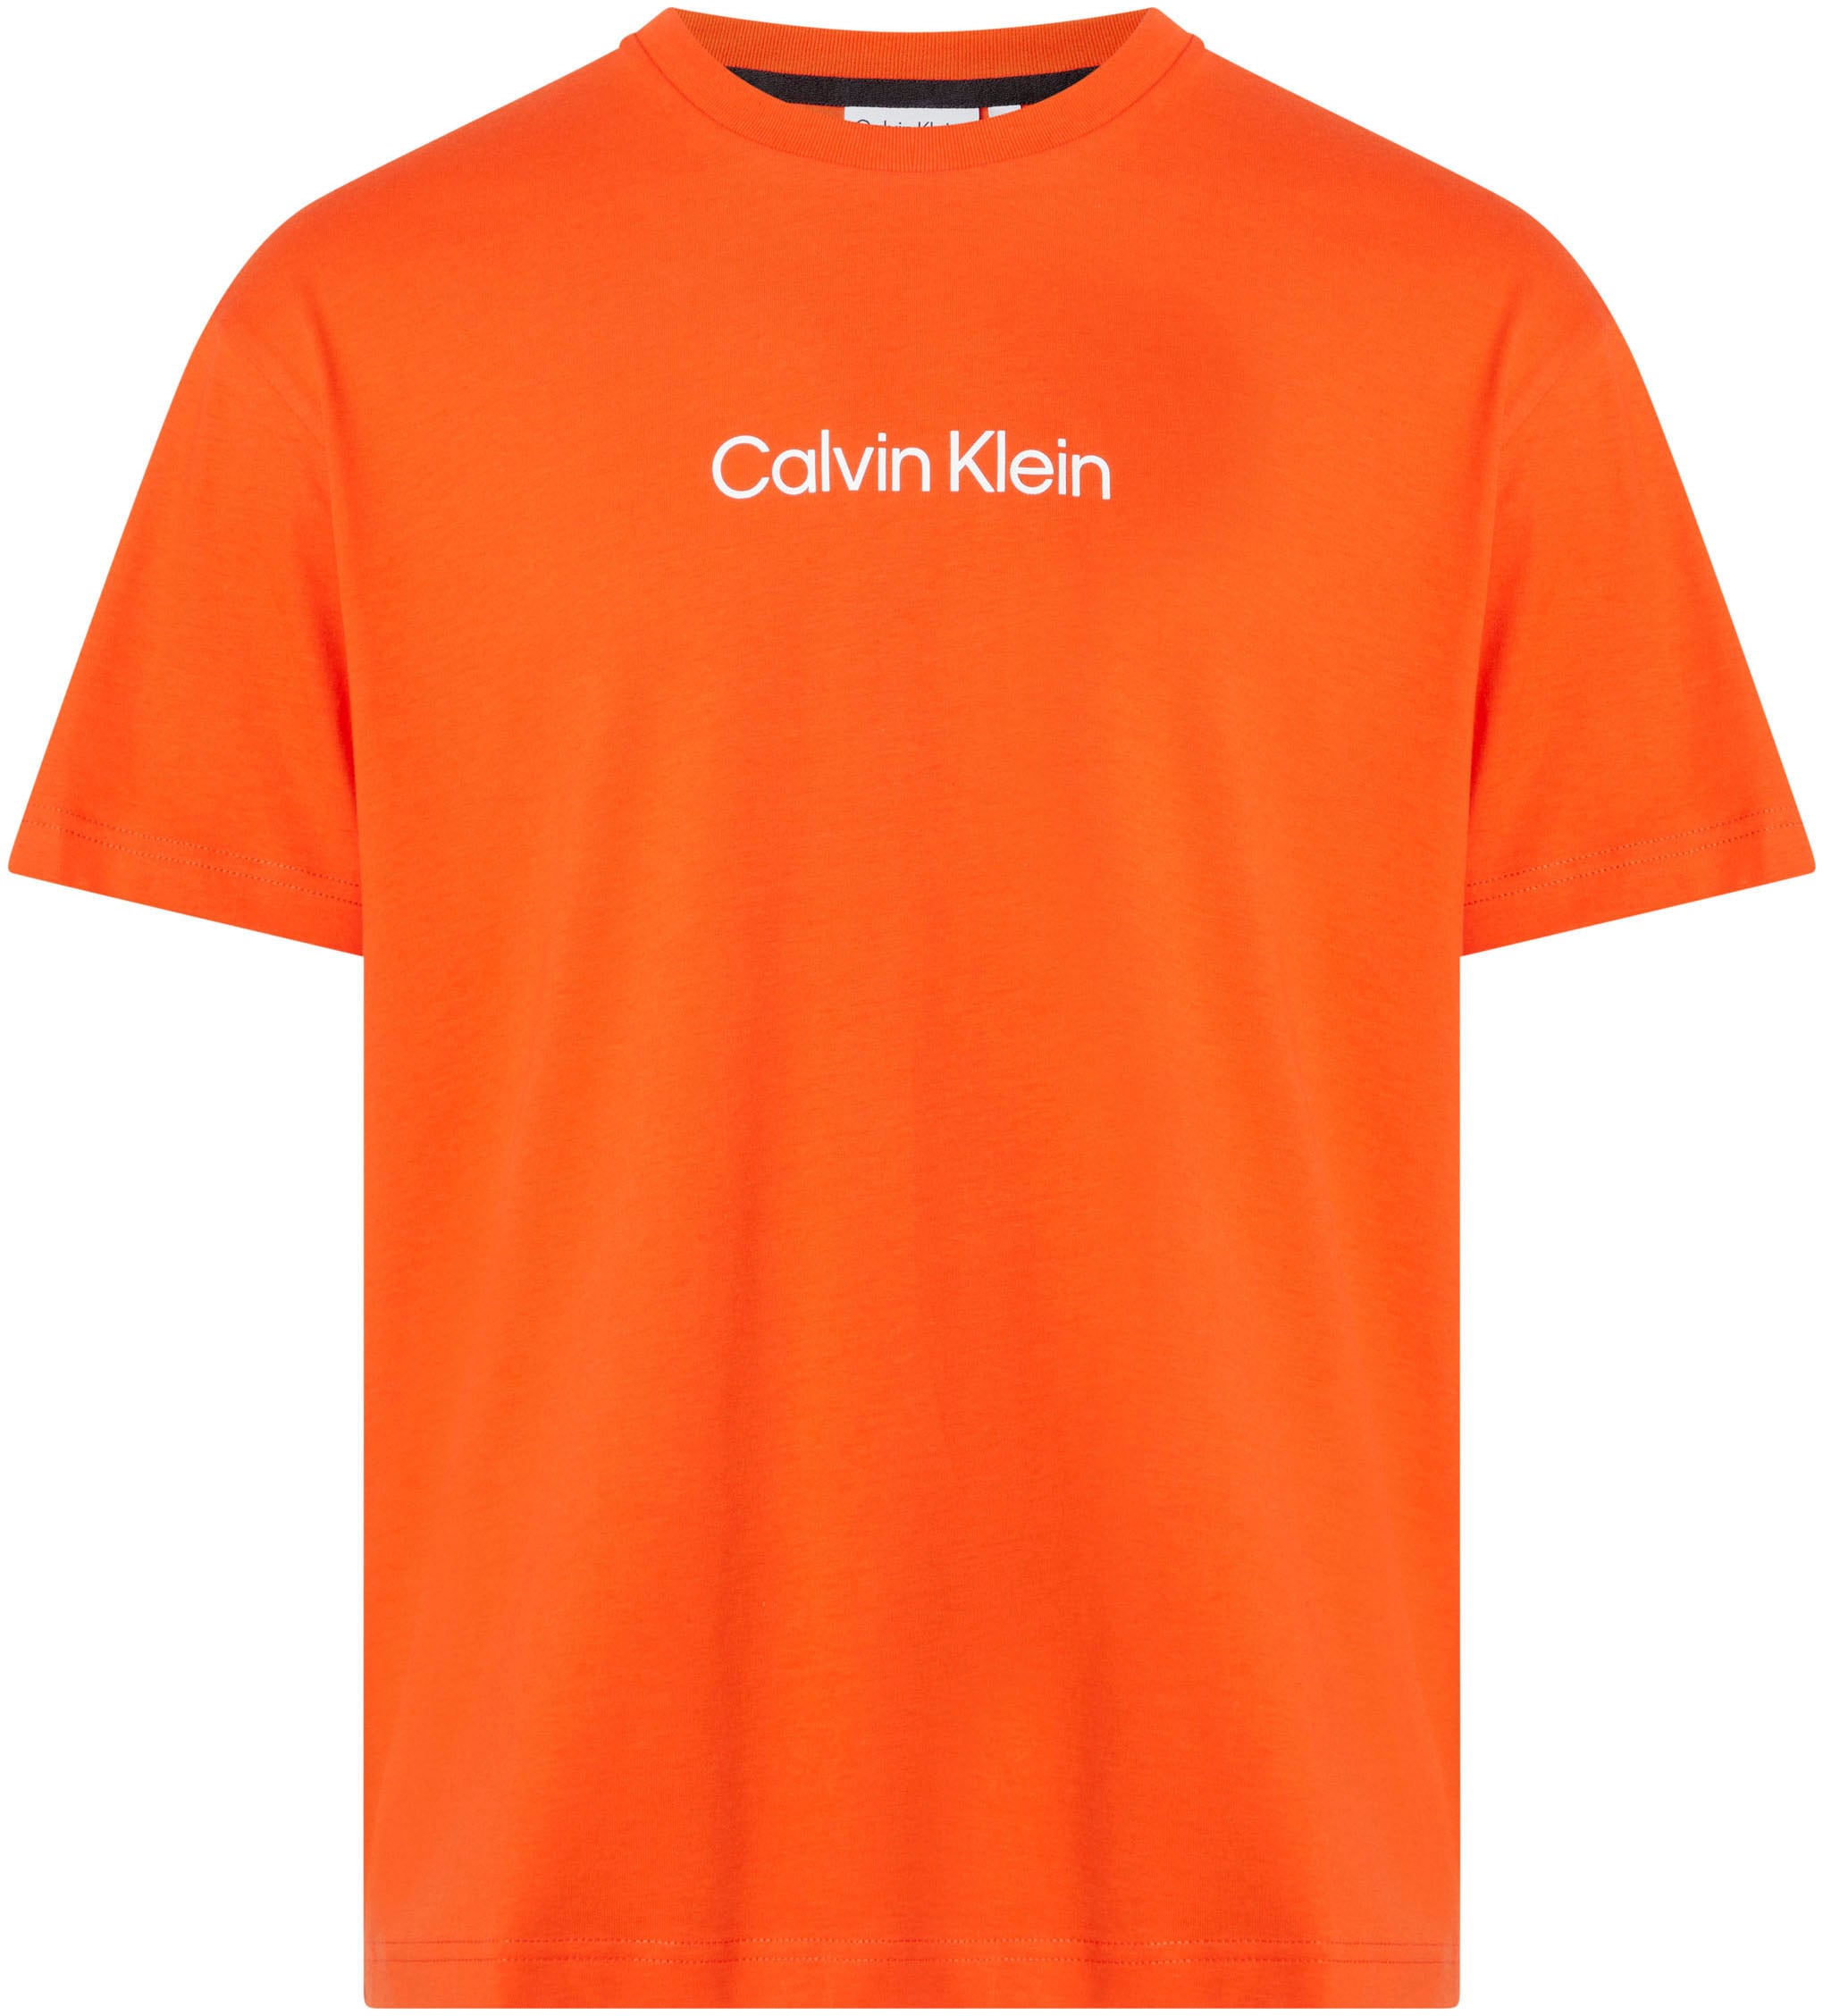 erfreut sich rasant wachsender Beliebtheit Calvin Klein T-Shirt »HERO bei mit Markenlabel LOGO ♕ T-SHIRT«, aufgedrucktem COMFORT